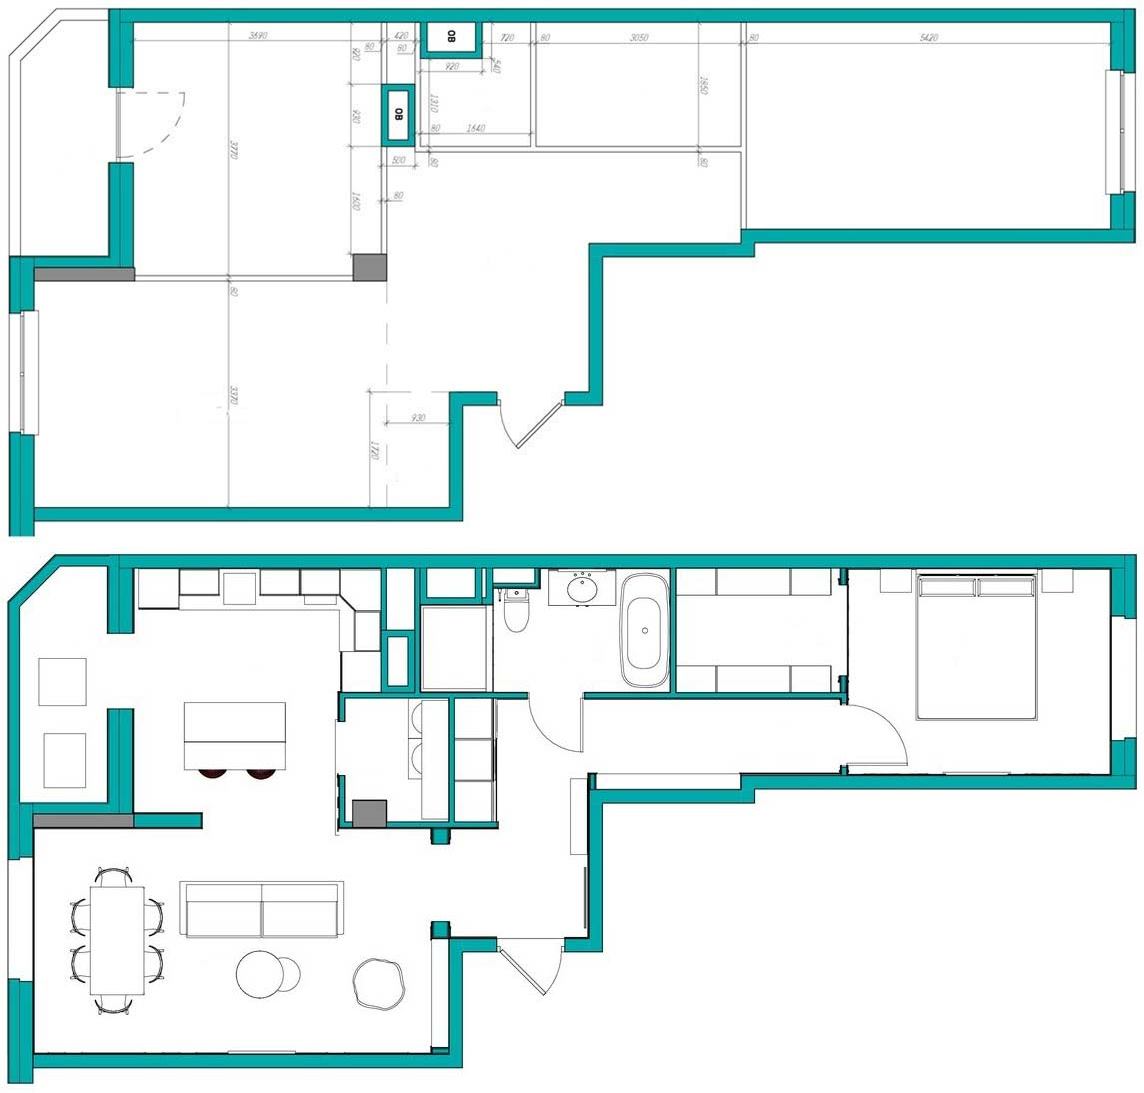 Alaprajz - Világoskék konyha, zöld, kék, vörös falak - 71m2-es lakás látványosan színes és mintás elemekkel